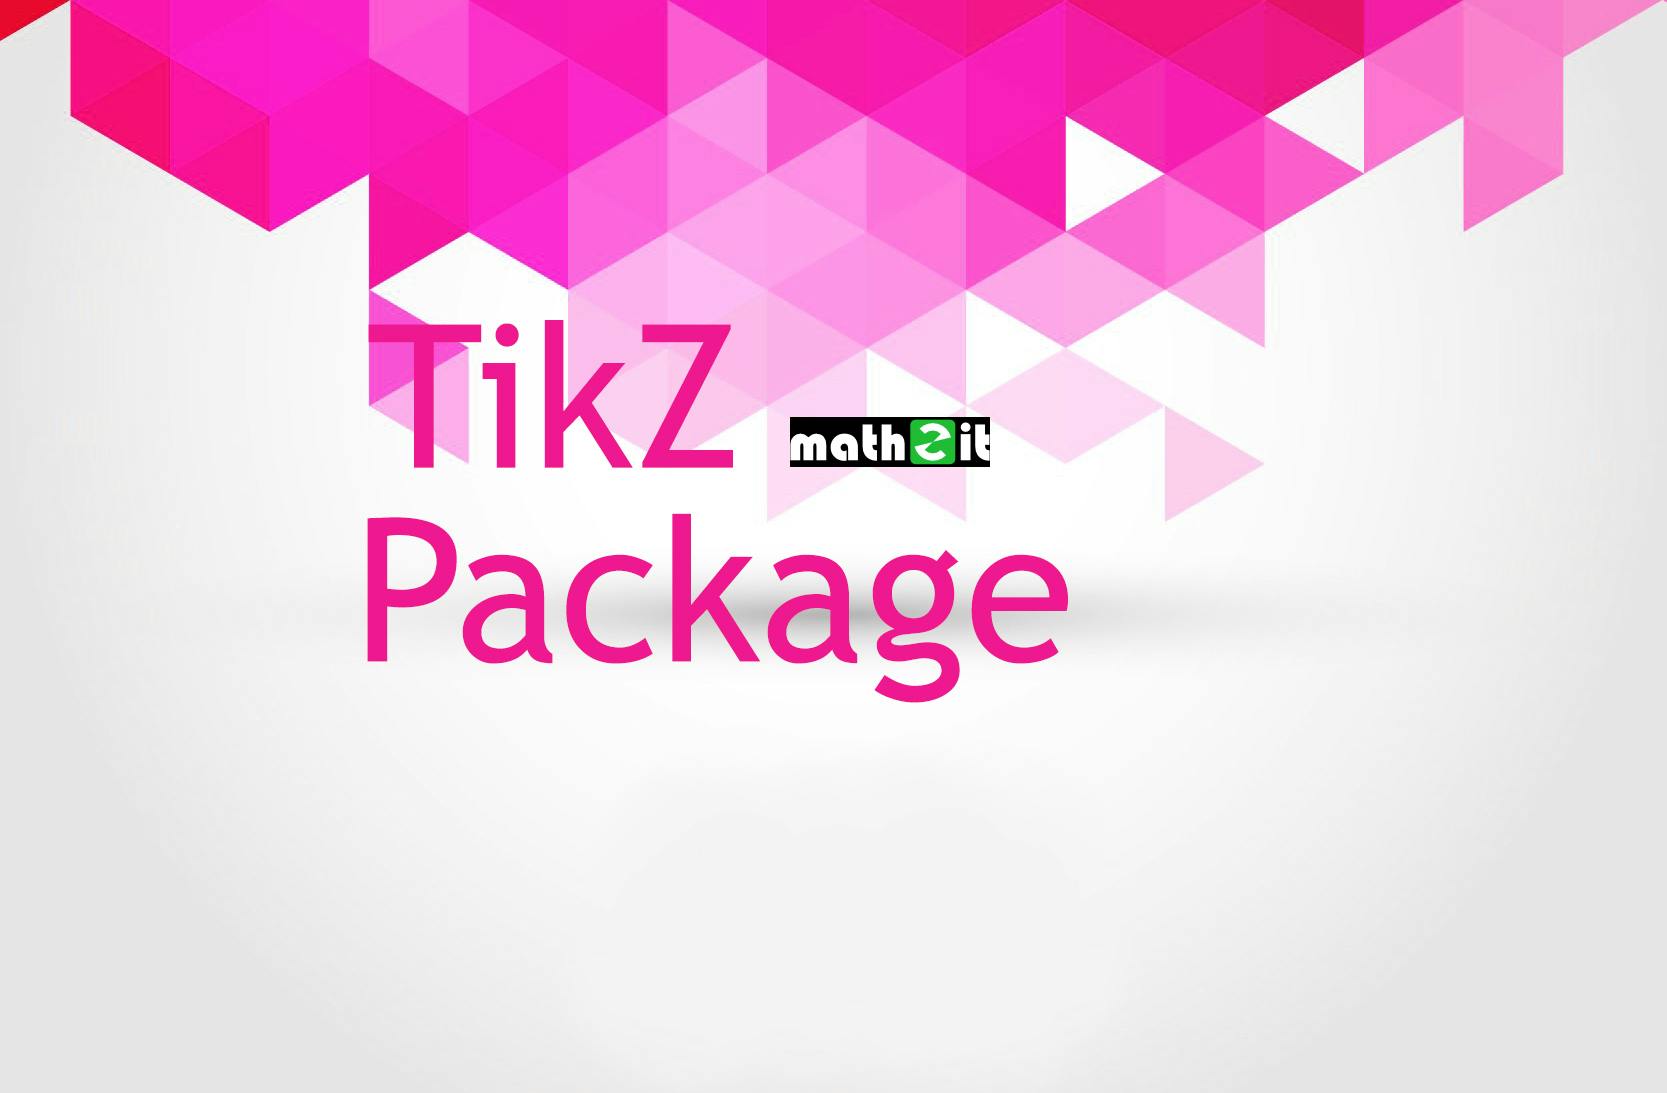 Tikz package - [Kỳ 2] Vẽ đồ thị và sử dụng vòng lặp trong TikZ